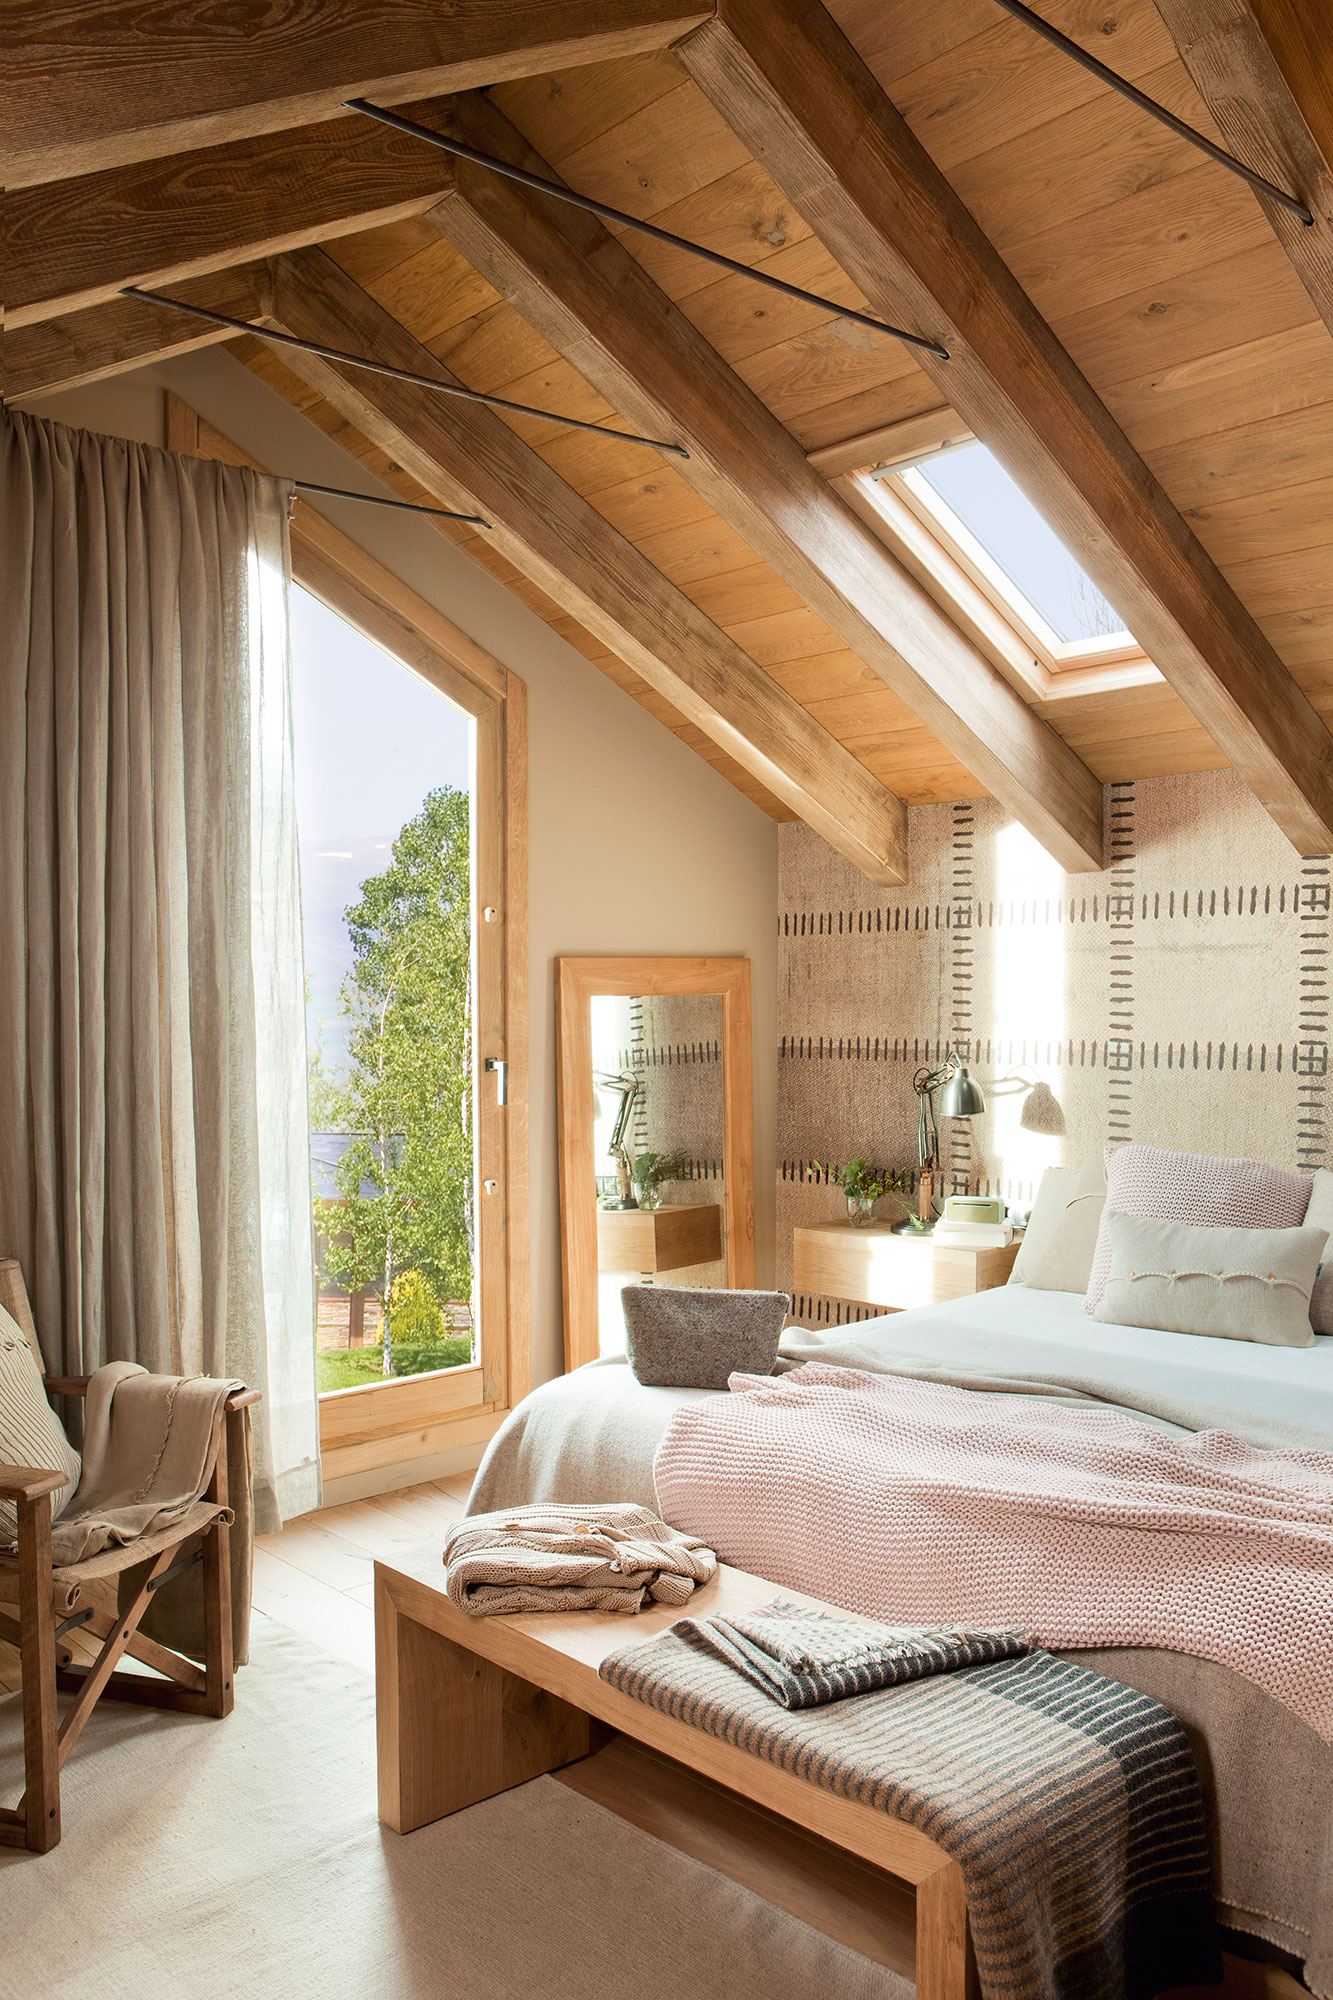 Dormitorio abuhardillado con vigas de madera y cabecero revestido de papel pintado que simula cuero.